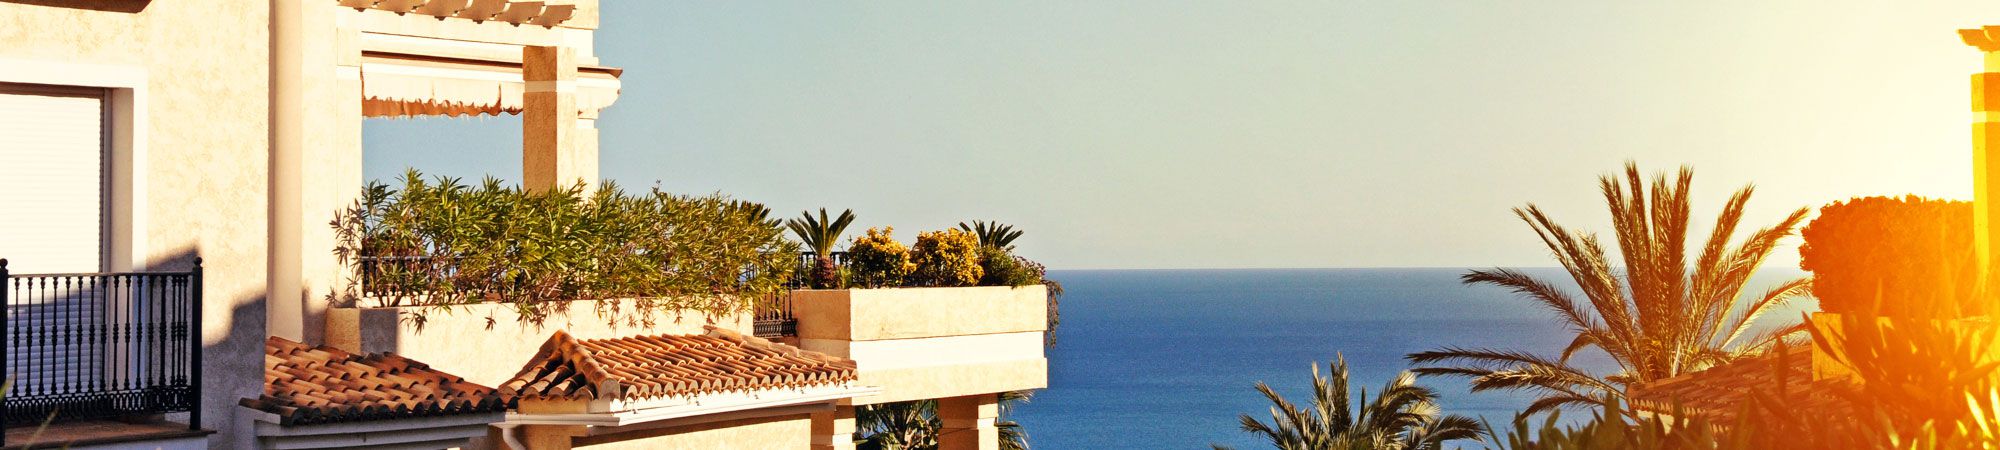 Amplia oferta de pisos, oficinas, locales, garajes, naves  en venta en Santa Cruz de Tenerife y la Laguna. SAMANIEGO REALTY-PORTAL CANARIO en Santa Cruz de Tenerife